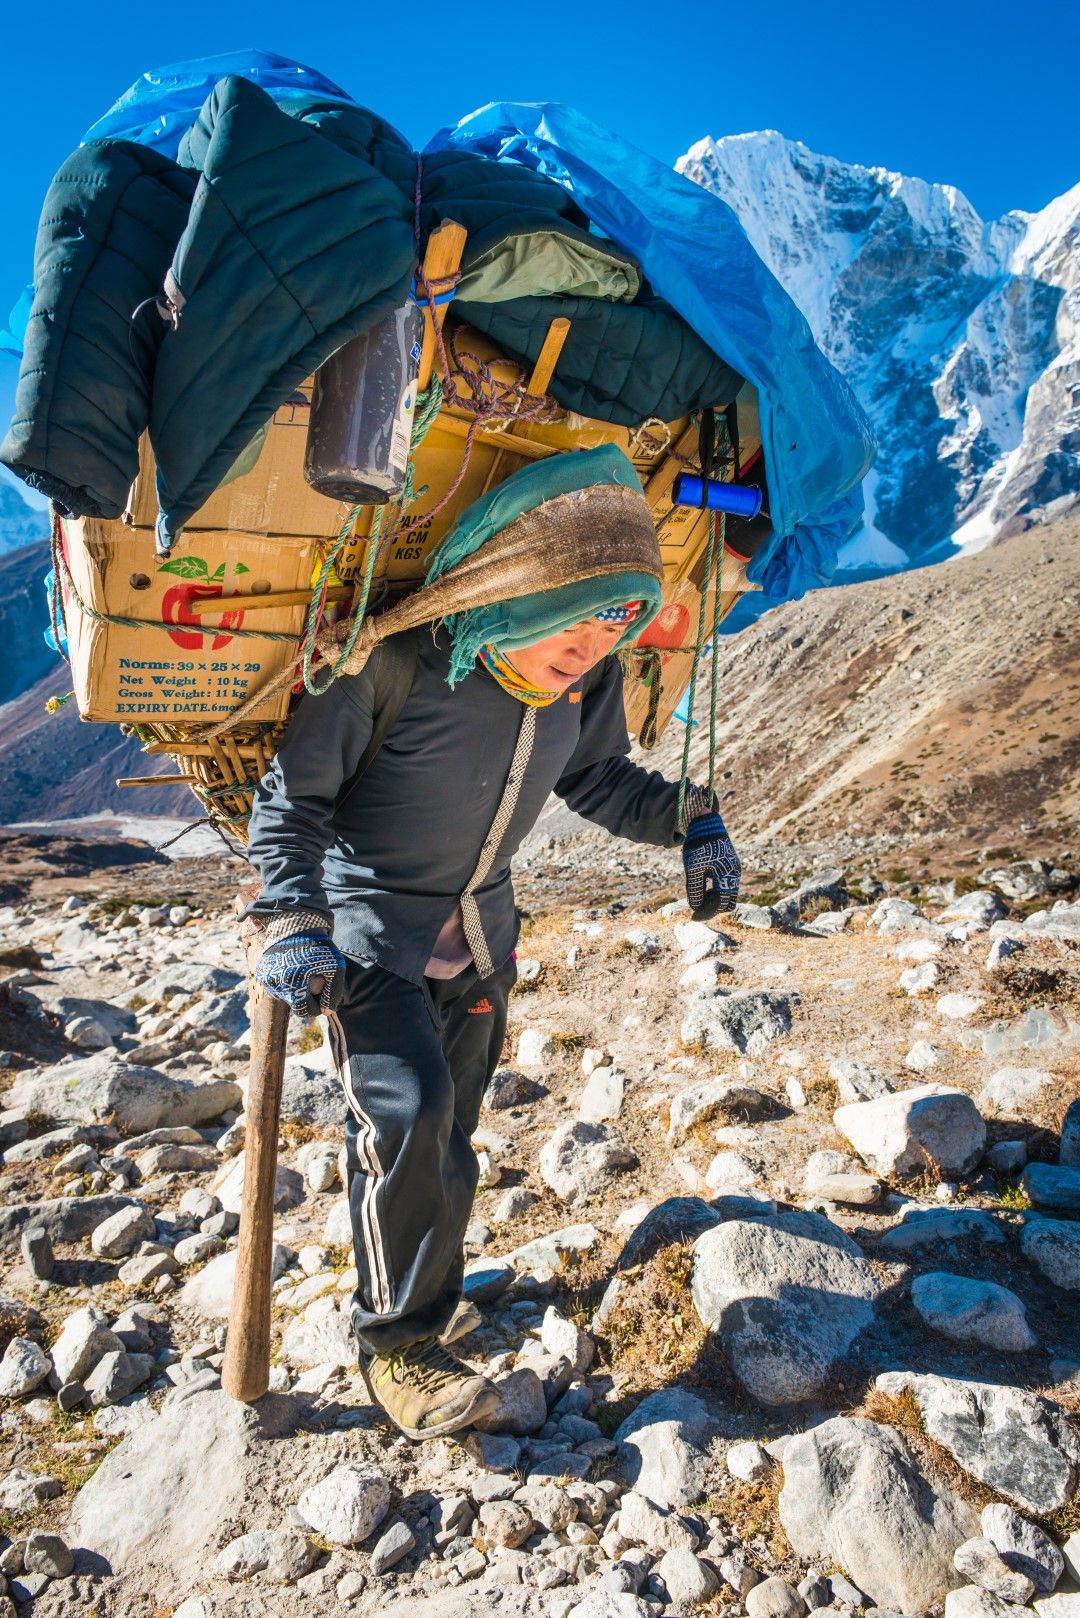 Експедициите често са подпомагани от местните шерпи, които са истинските герои на изкачванията